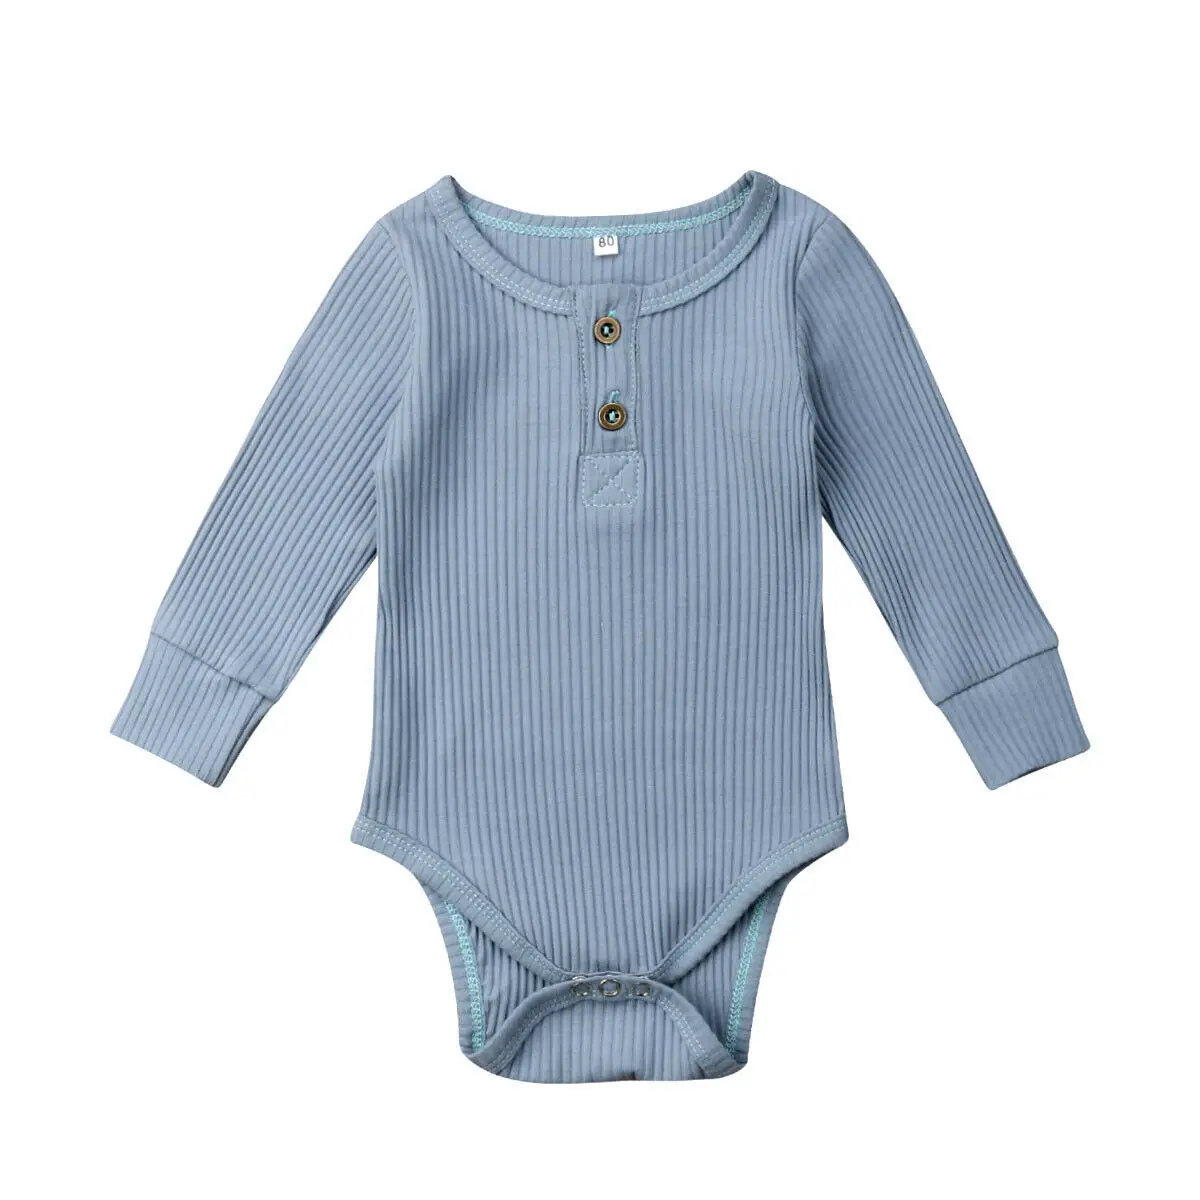 Одежда для новорожденных девочек и мальчиков, одежда для новорожденных боди, хлопковый комбинезон унисекс с длинными рукавами, цельнокроеный костюм в рубчик для альпинизма на возраст от 0 до 24 месяцев